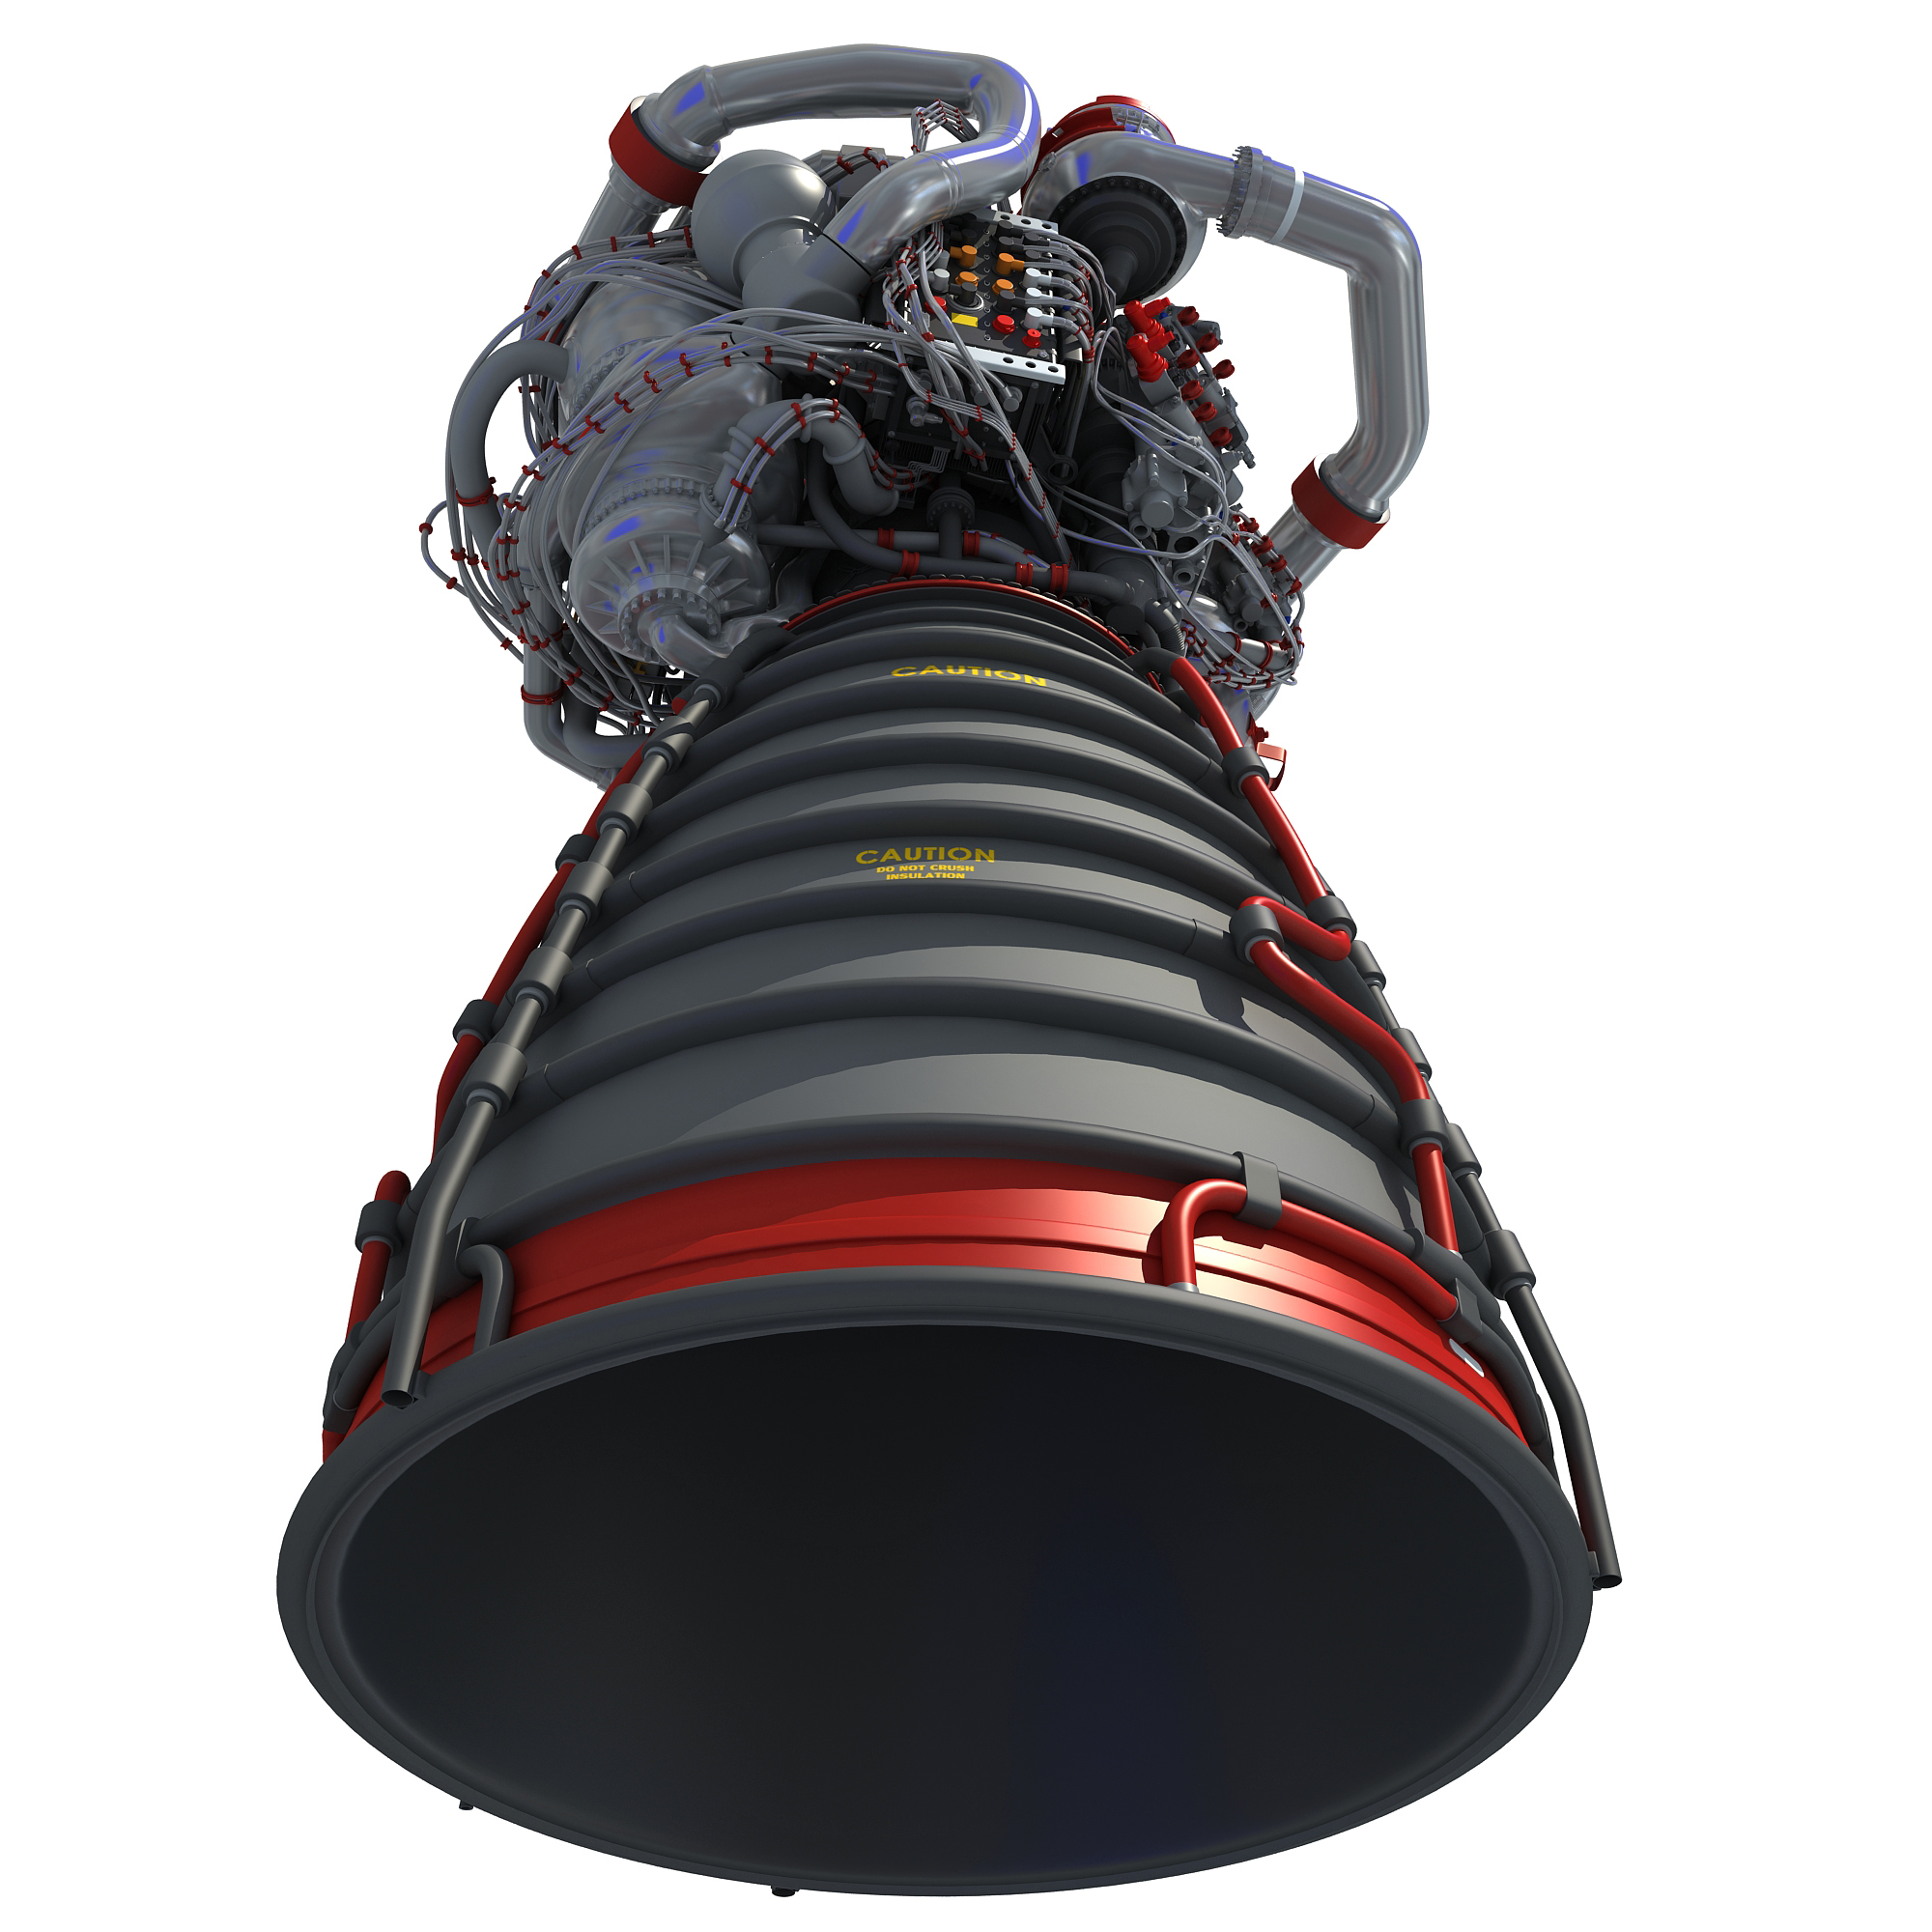 火箭发动机壳体图片